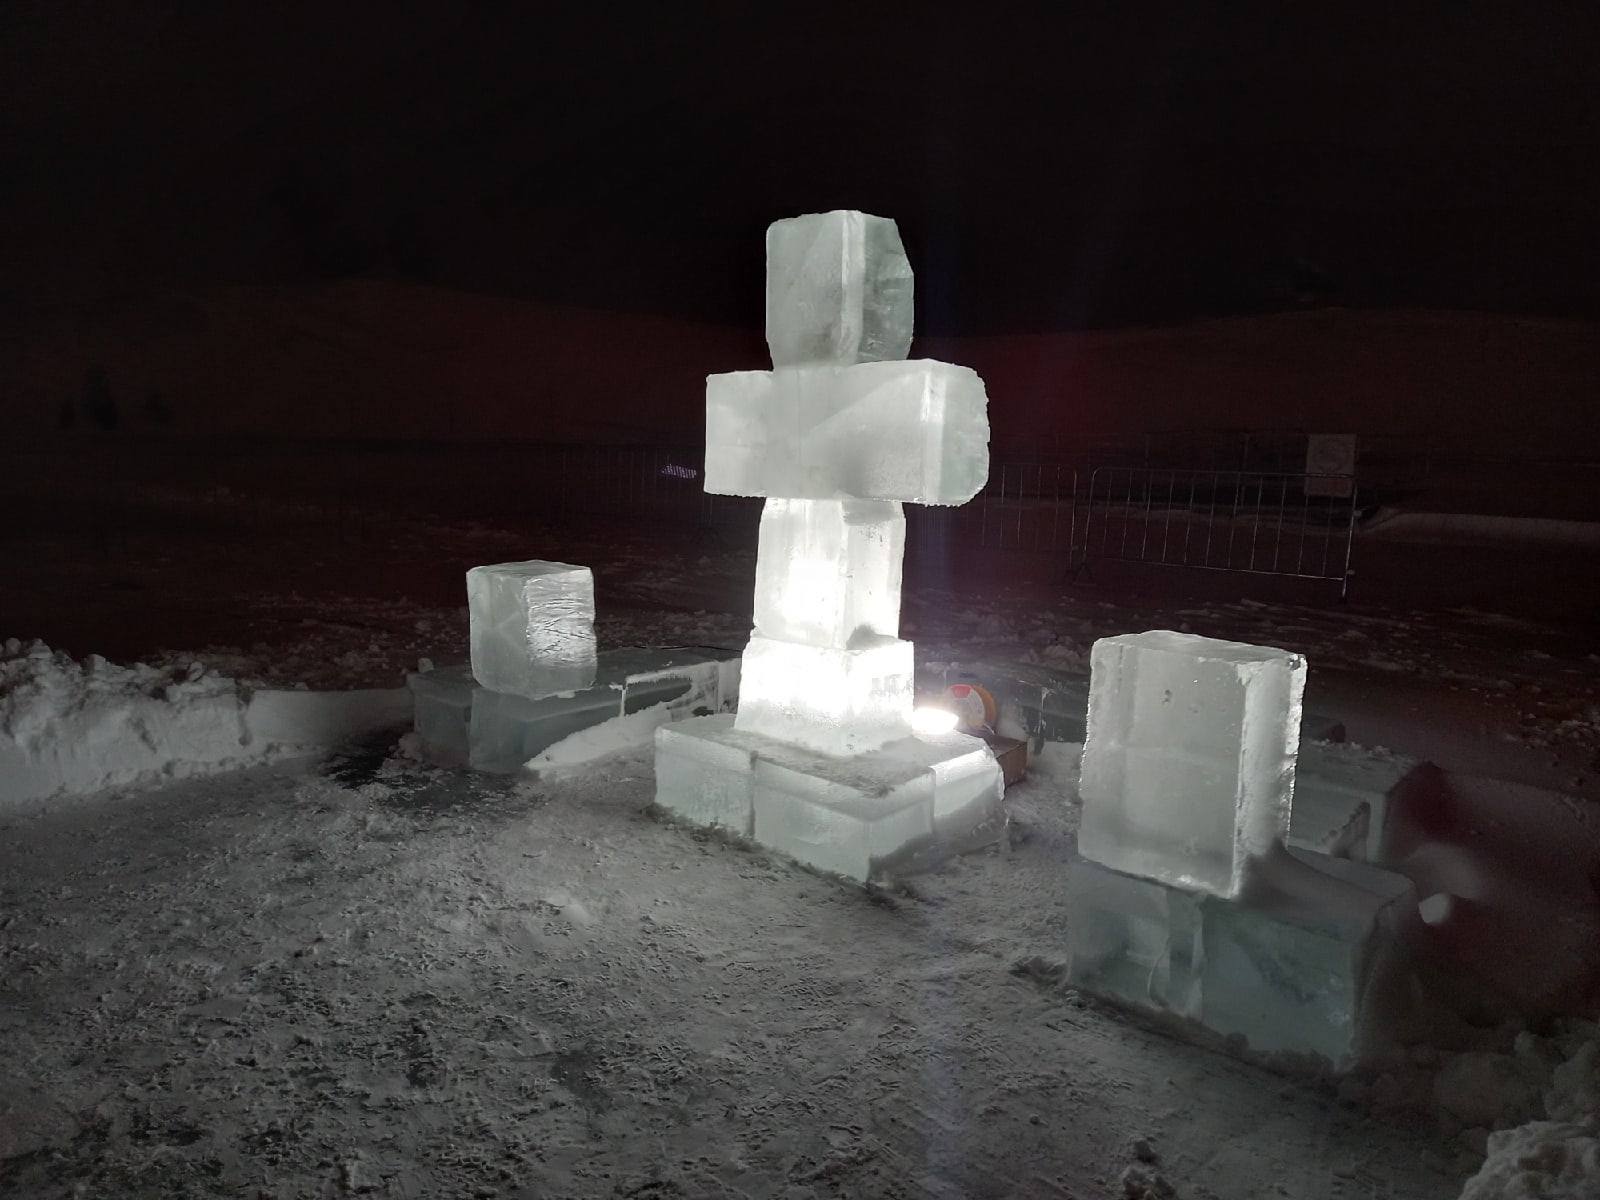 Около майны поставили символику праздника, высеченную изо льда. В темноте она красиво светилась